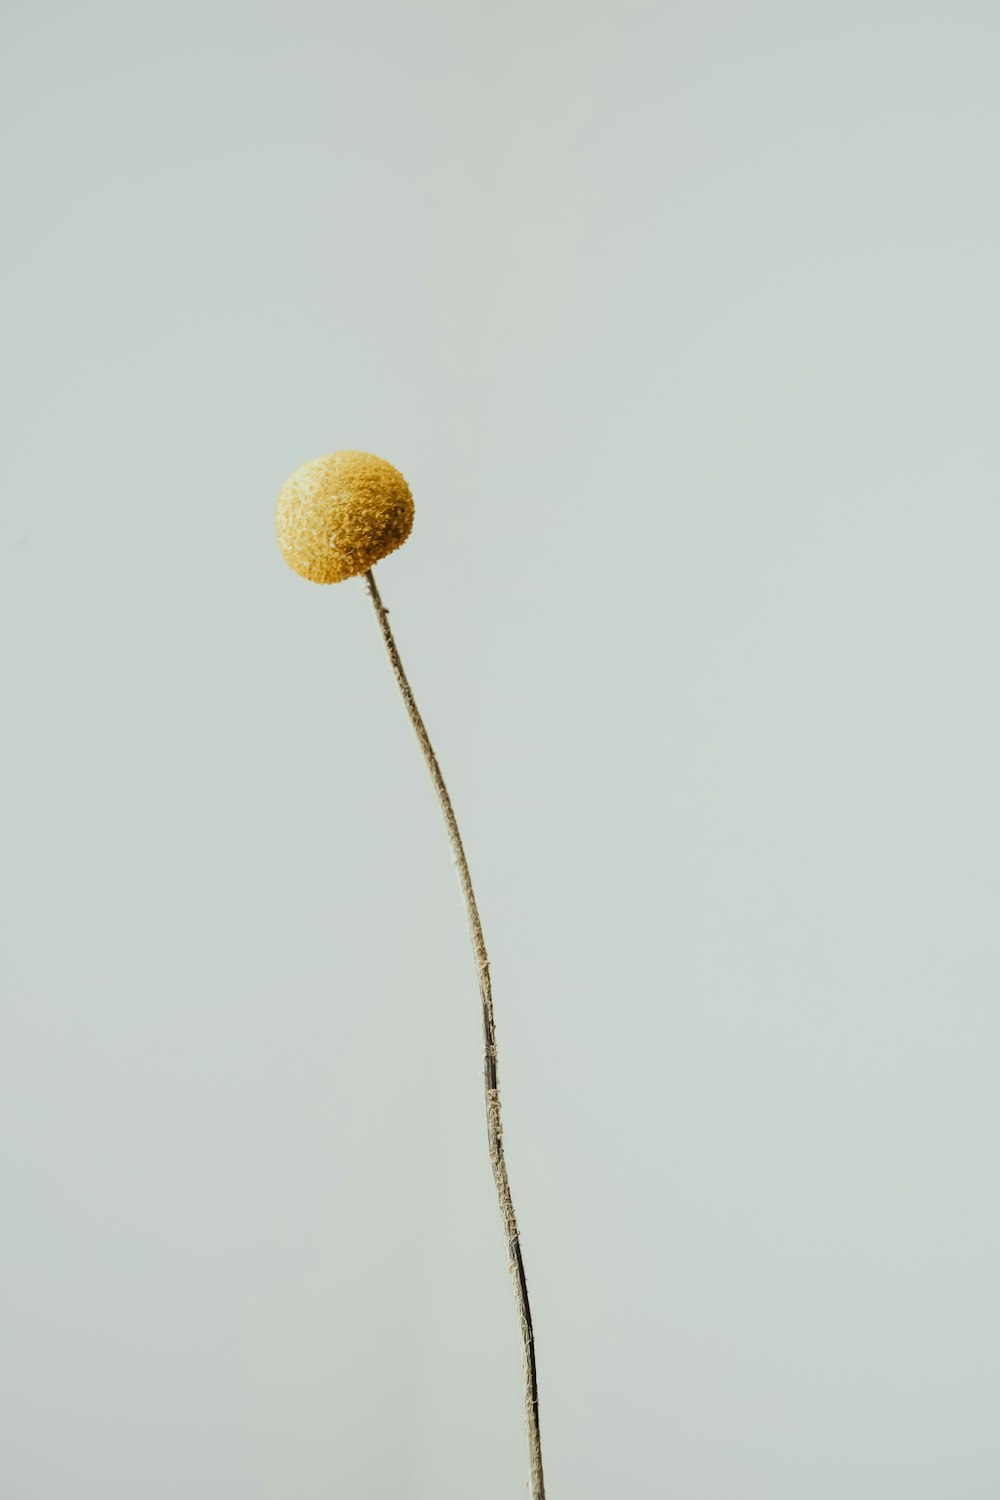 une plante surmontée d’une boule jaune